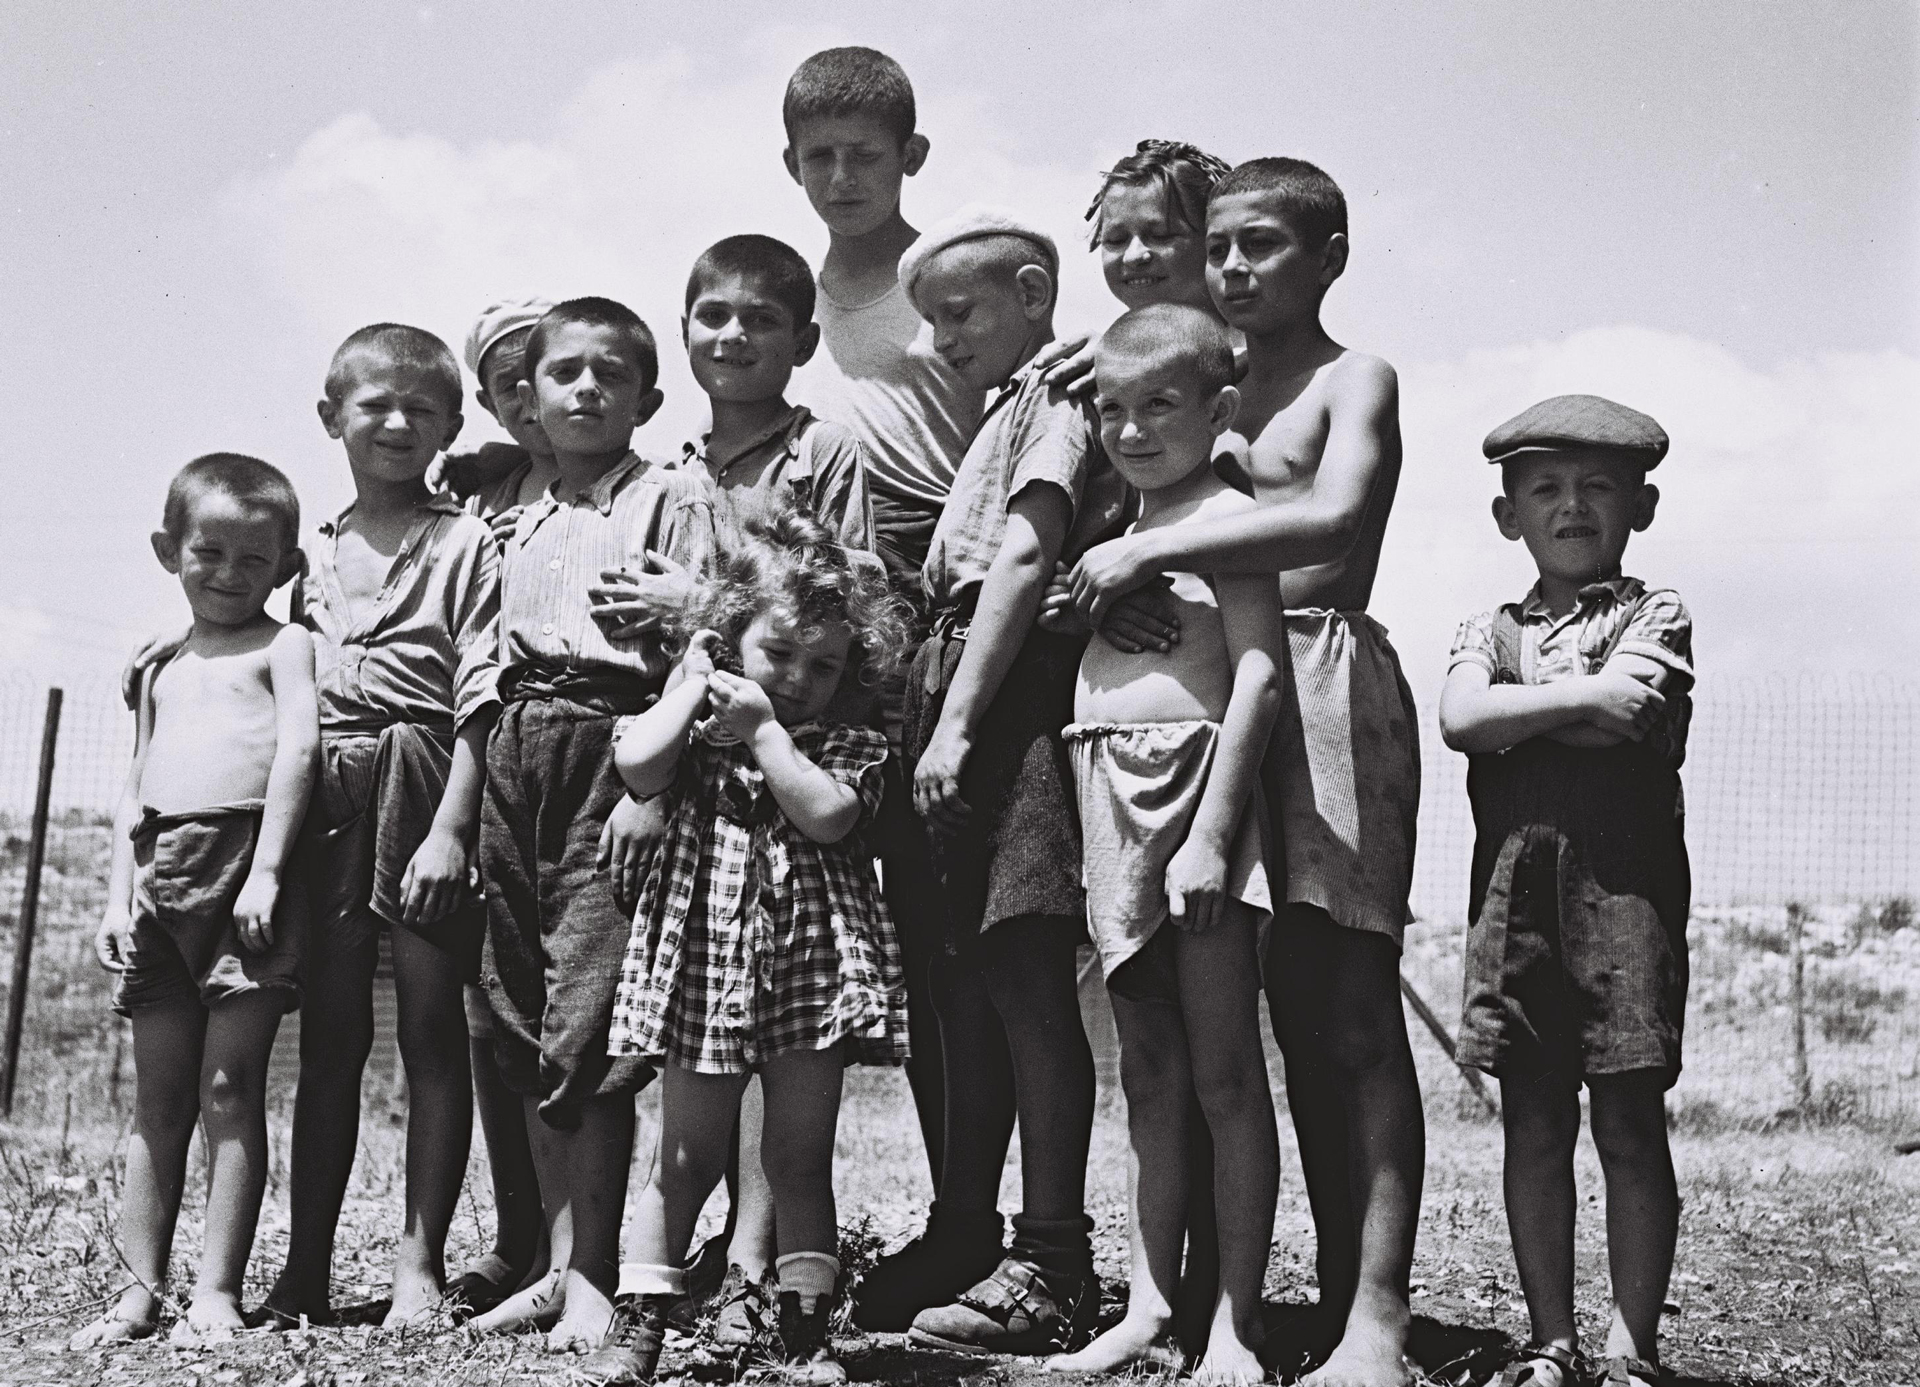 יתומים ניצולי שואה במחנה עתלית 1944